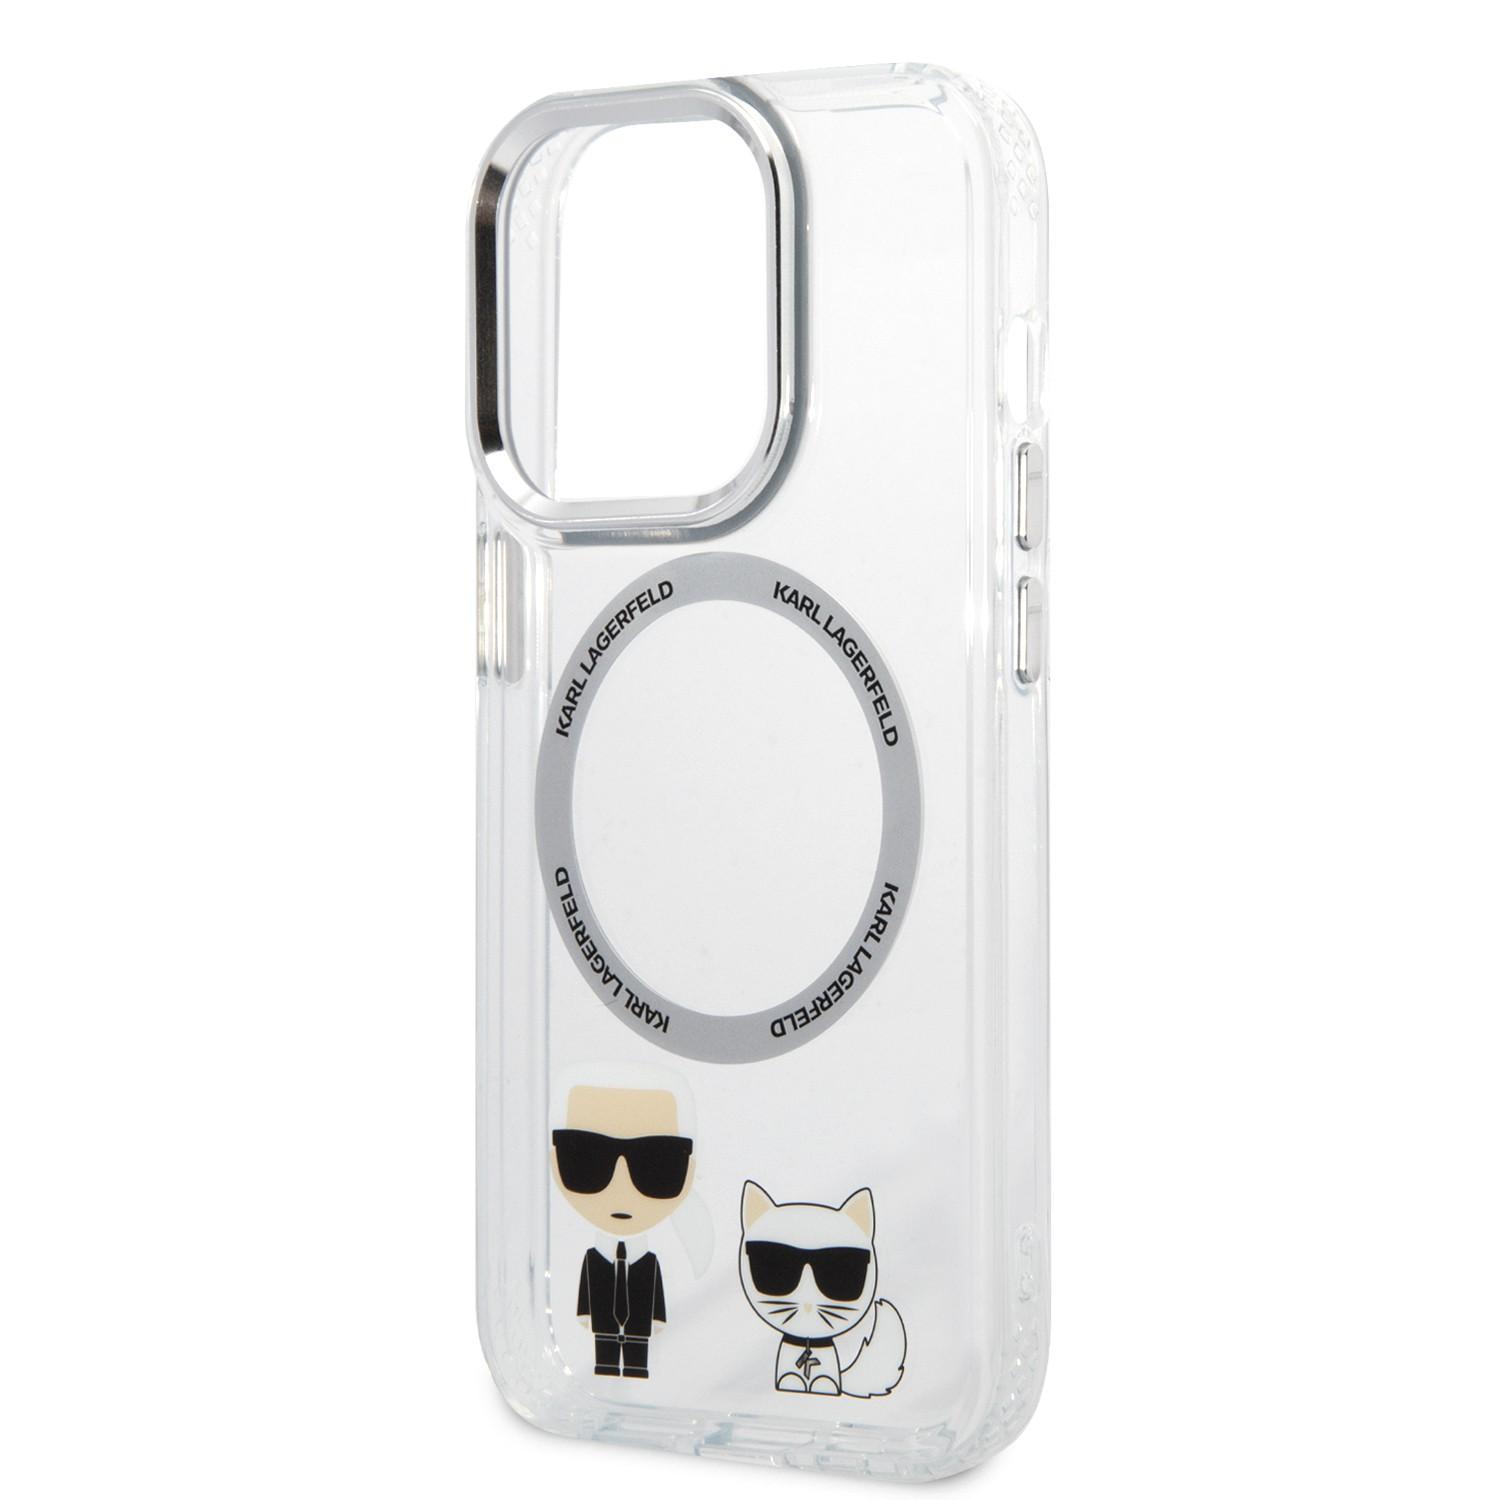 كفر جوال ايفون 14 برو ماكس ماغ سيف شفاف لون أبيض من كارل لاغرفيلد Karl Lagerfeld Magsafe PC TPU Case With Ring iPhone 14 Pro Max - cG9zdDoxMzkxMDA1